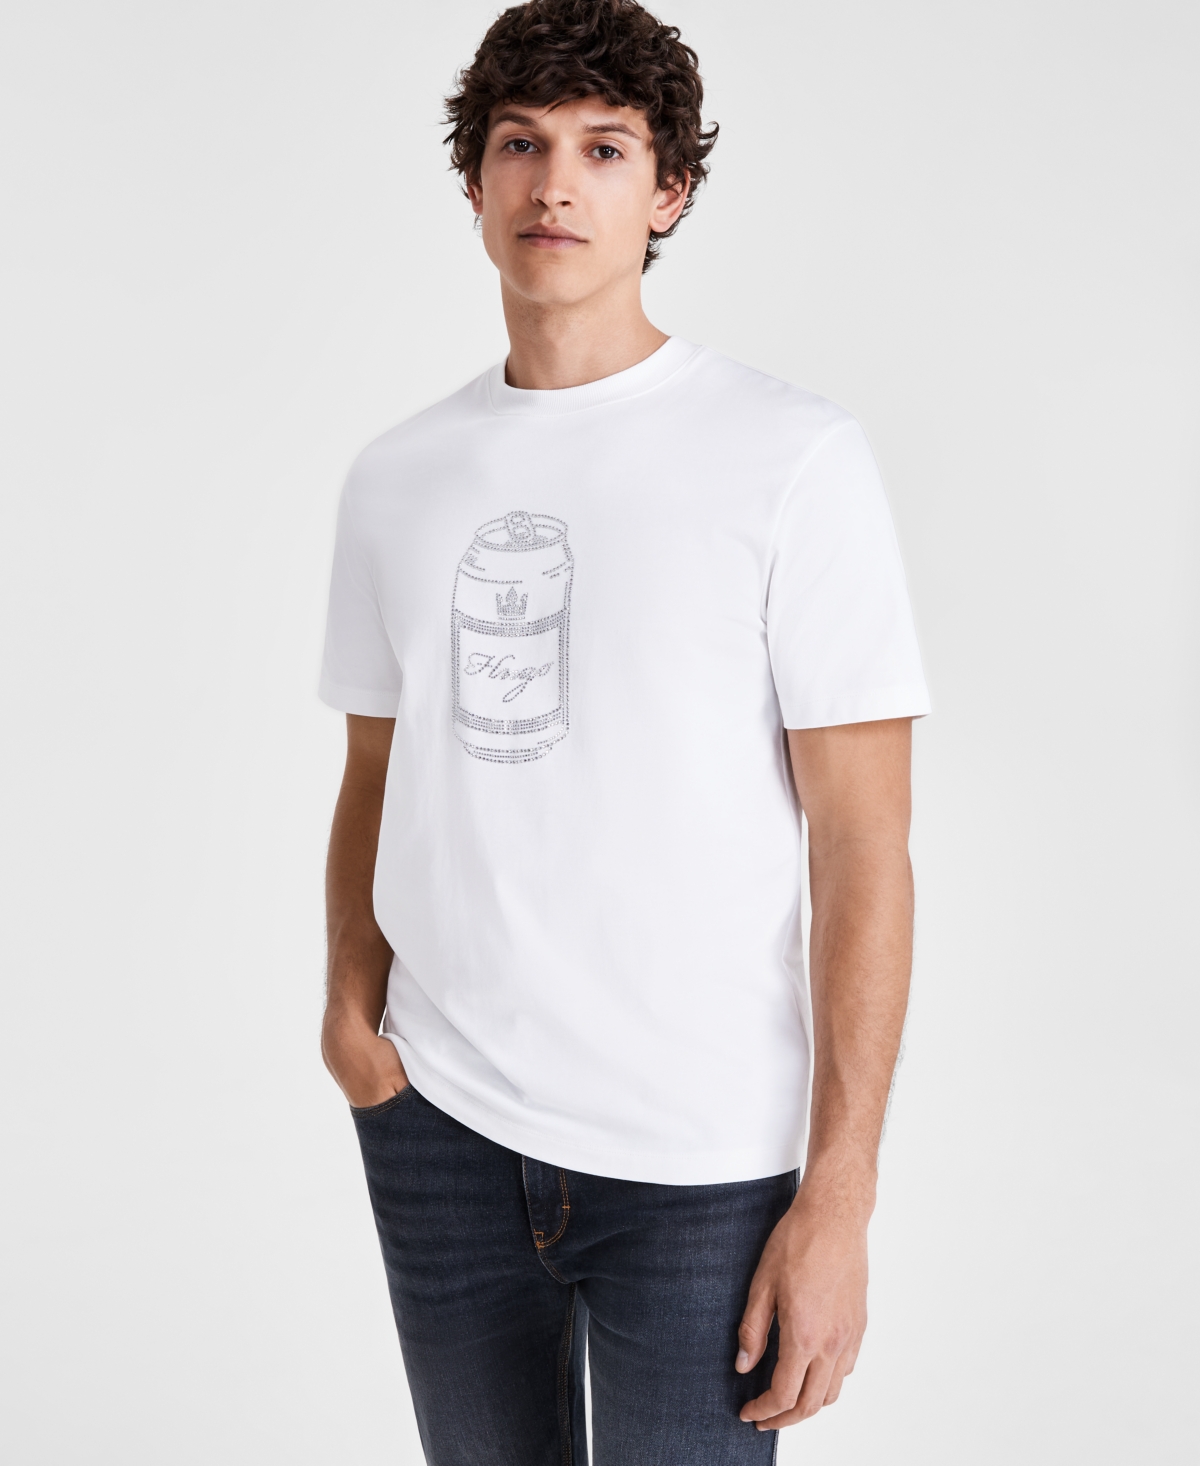 by Hugo Boss Men's Logo Graphic T-Shirt - Wht